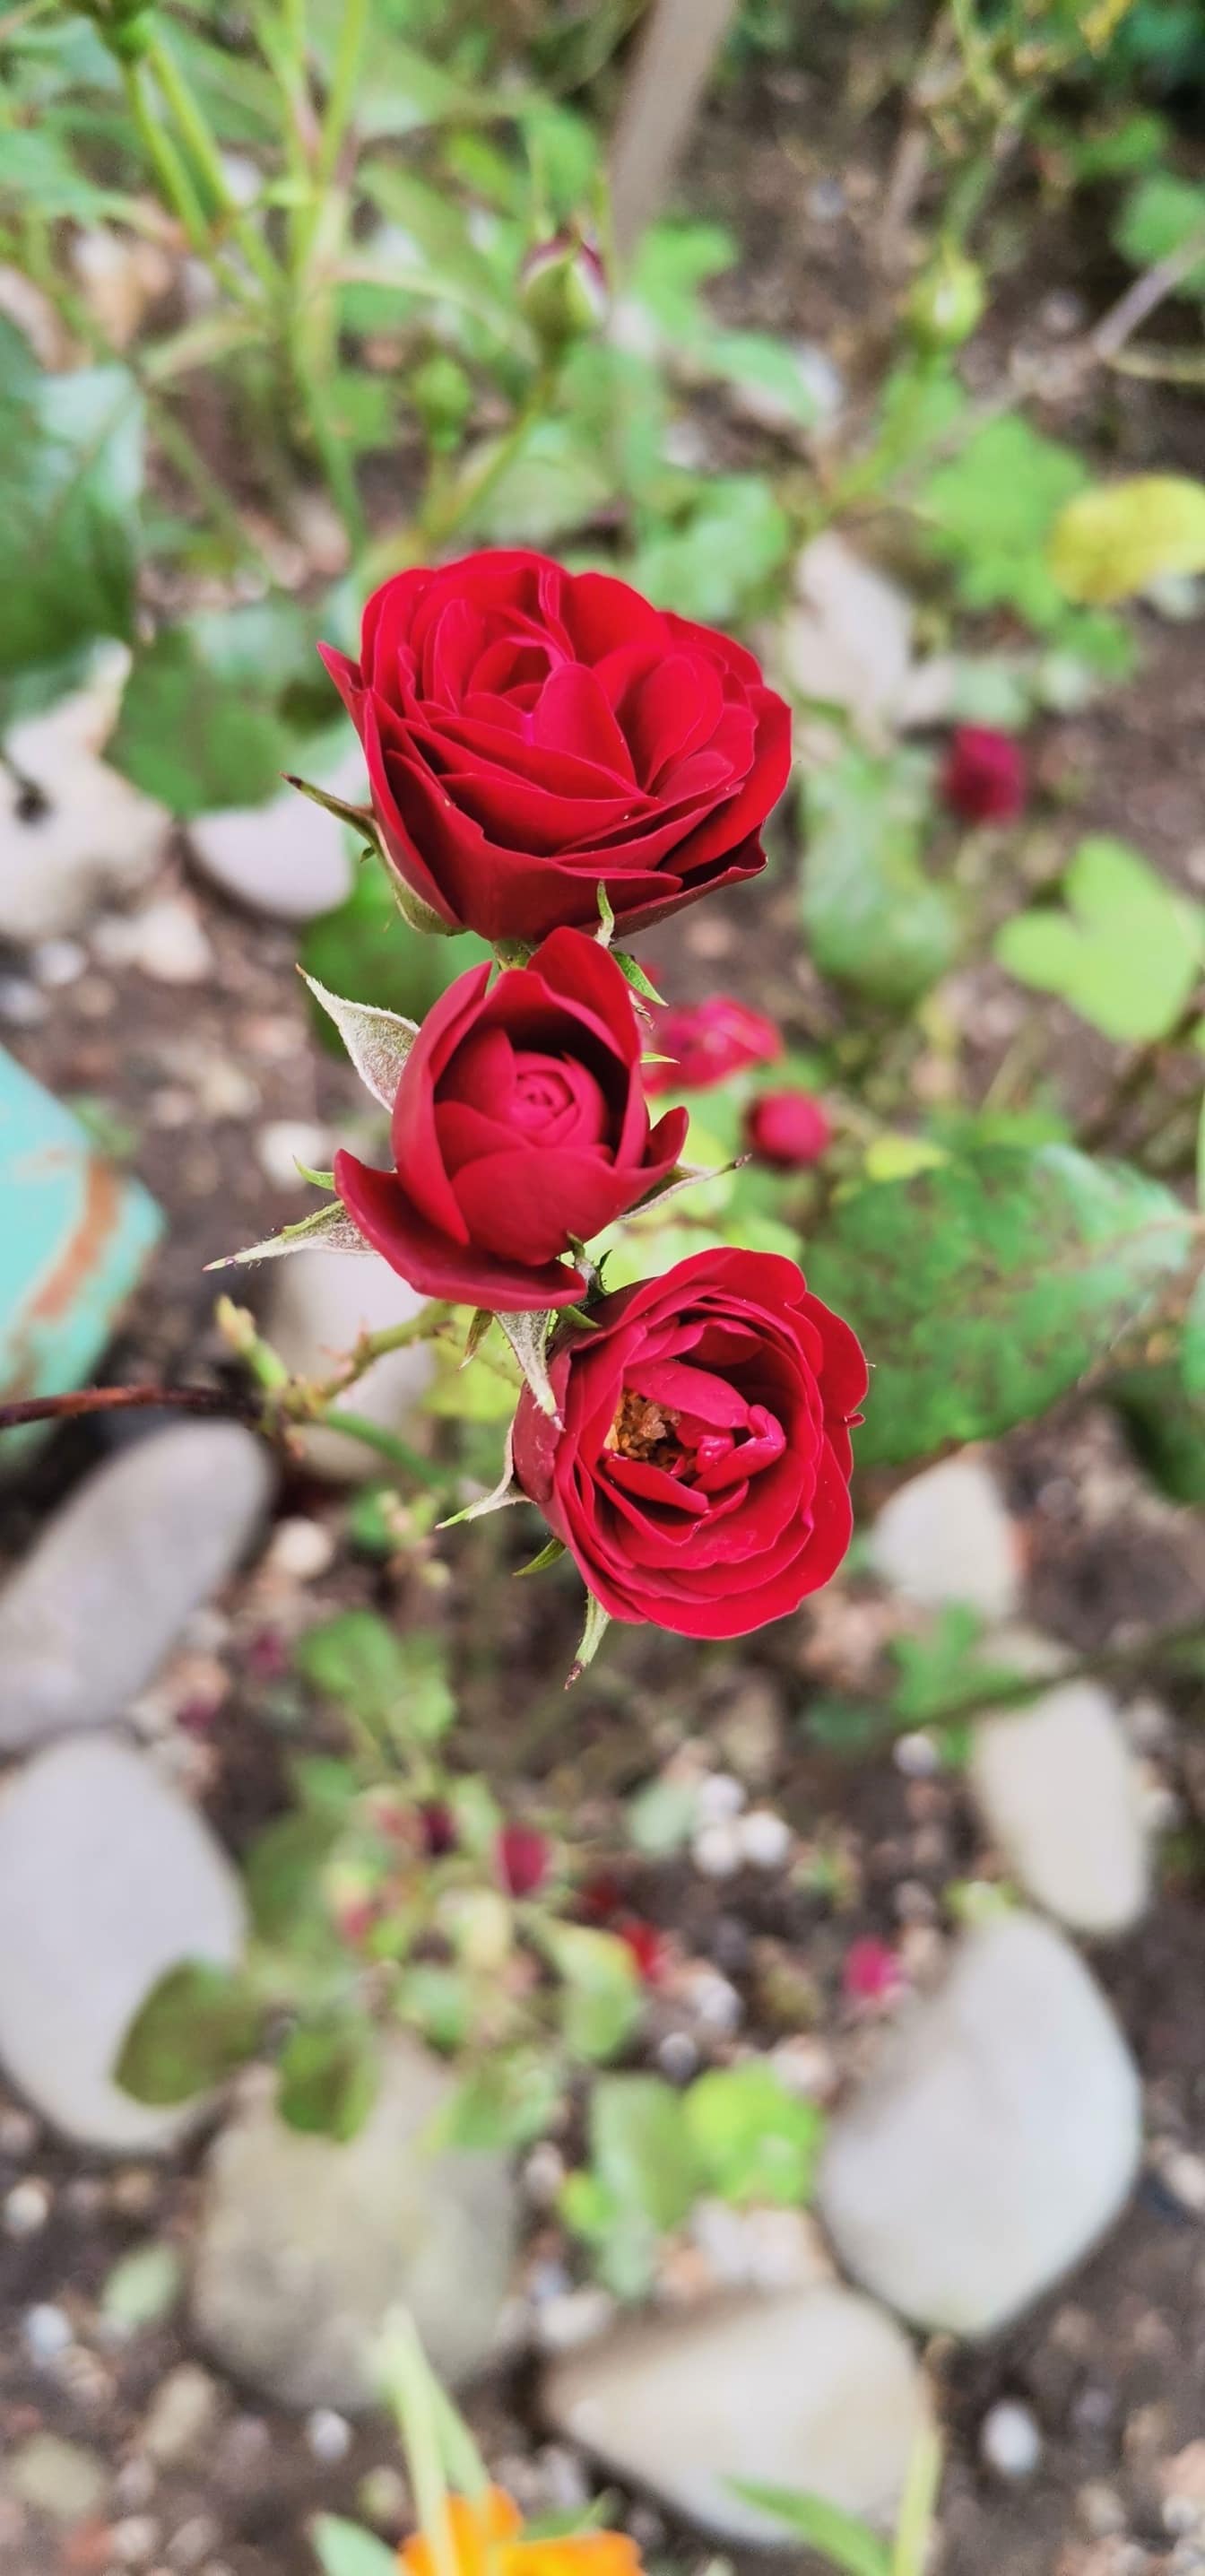 花园特写中的三朵暗红色玫瑰花蕾